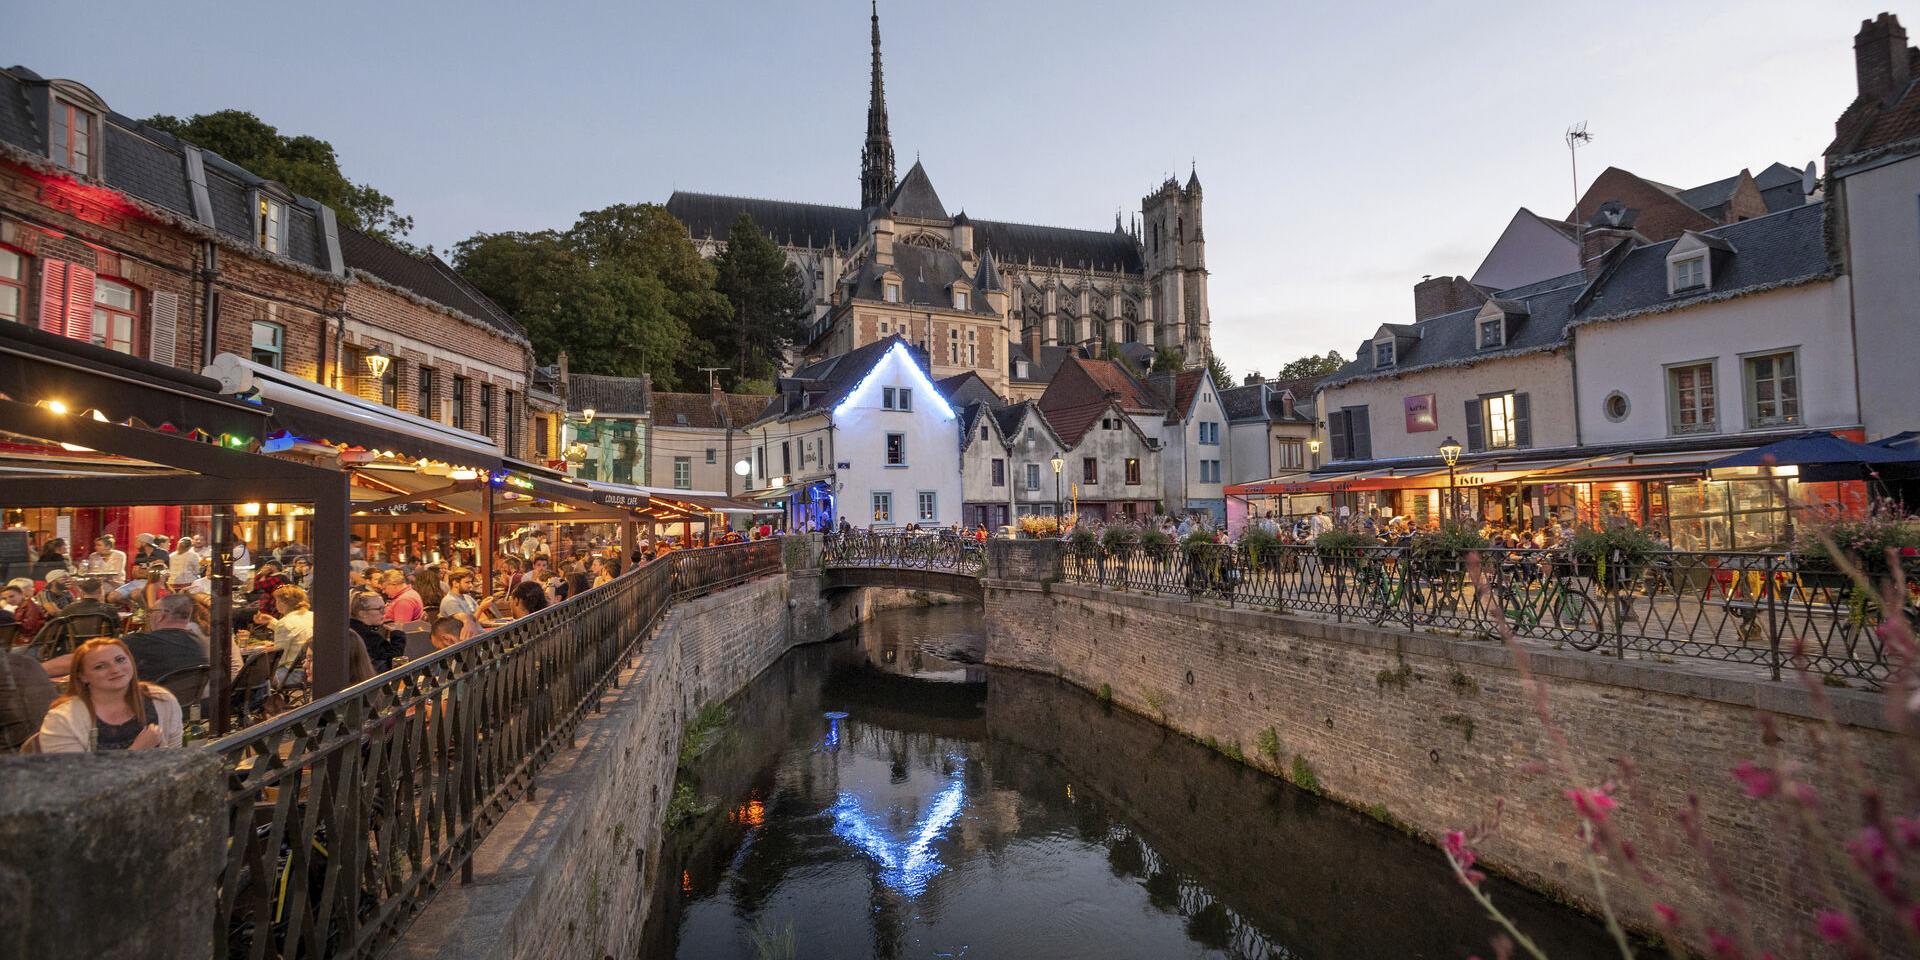 Αμιέν, η πόλη που διεκδικεί τον τίτλο της Πολιτιστικής Πρωτεύουσας της Ευρώπης για το 2018